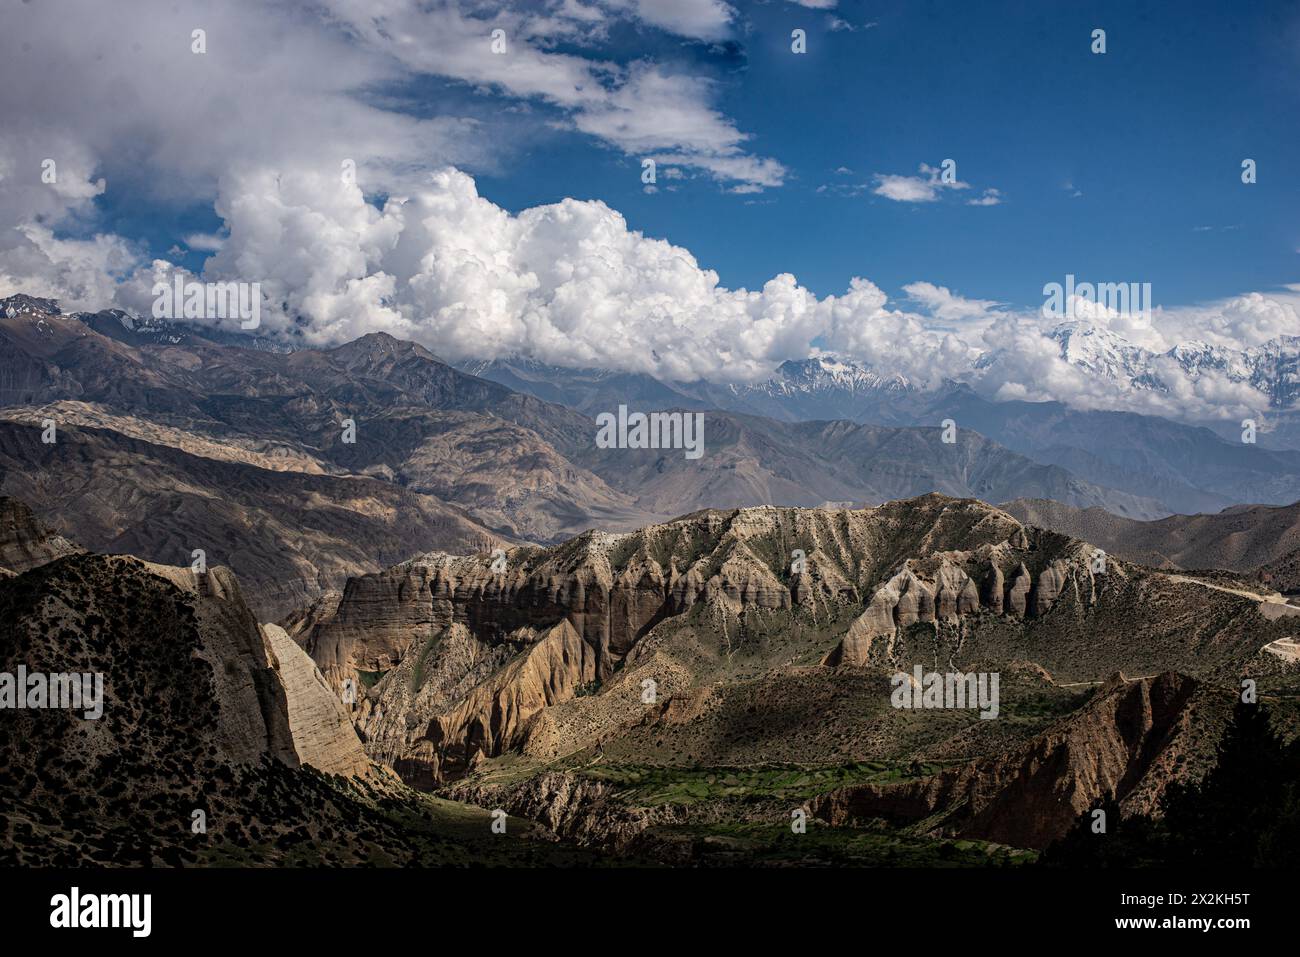 Upper Mustang: Eine Kulturbastion im Himalaya – Erhaltung des Vermächtnisses des Königreichs Lo durch nachhaltigen Tourismus und Handel. Stockfoto